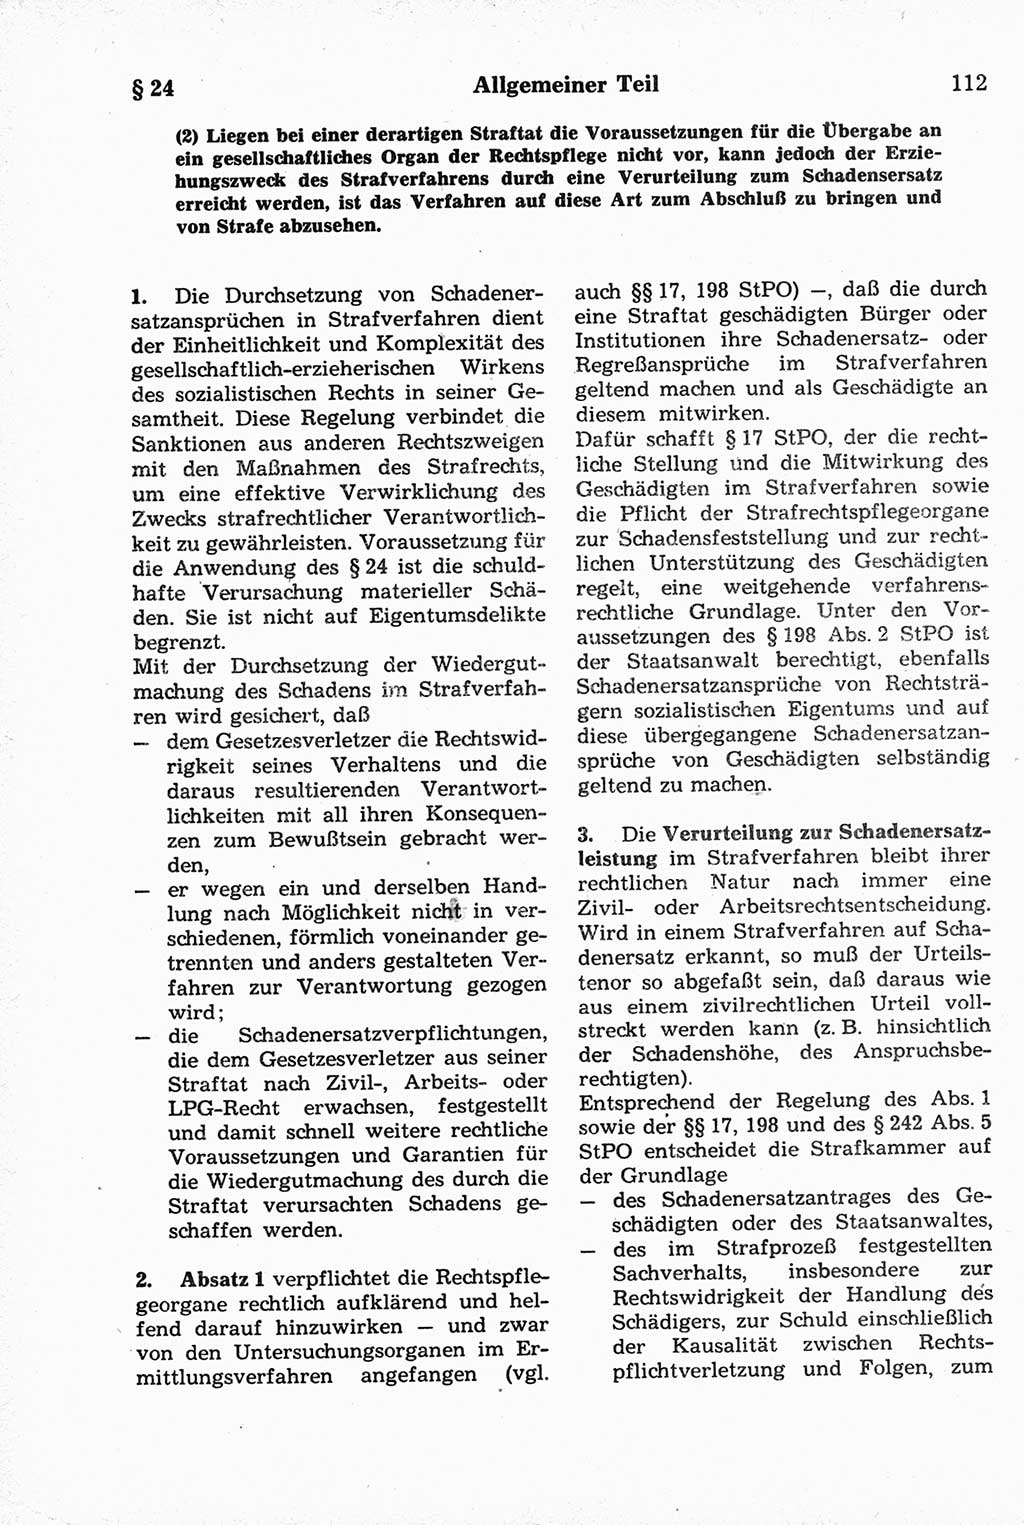 Strafrecht der Deutschen Demokratischen Republik (DDR), Kommentar zum Strafgesetzbuch (StGB) 1981, Seite 112 (Strafr. DDR Komm. StGB 1981, S. 112)